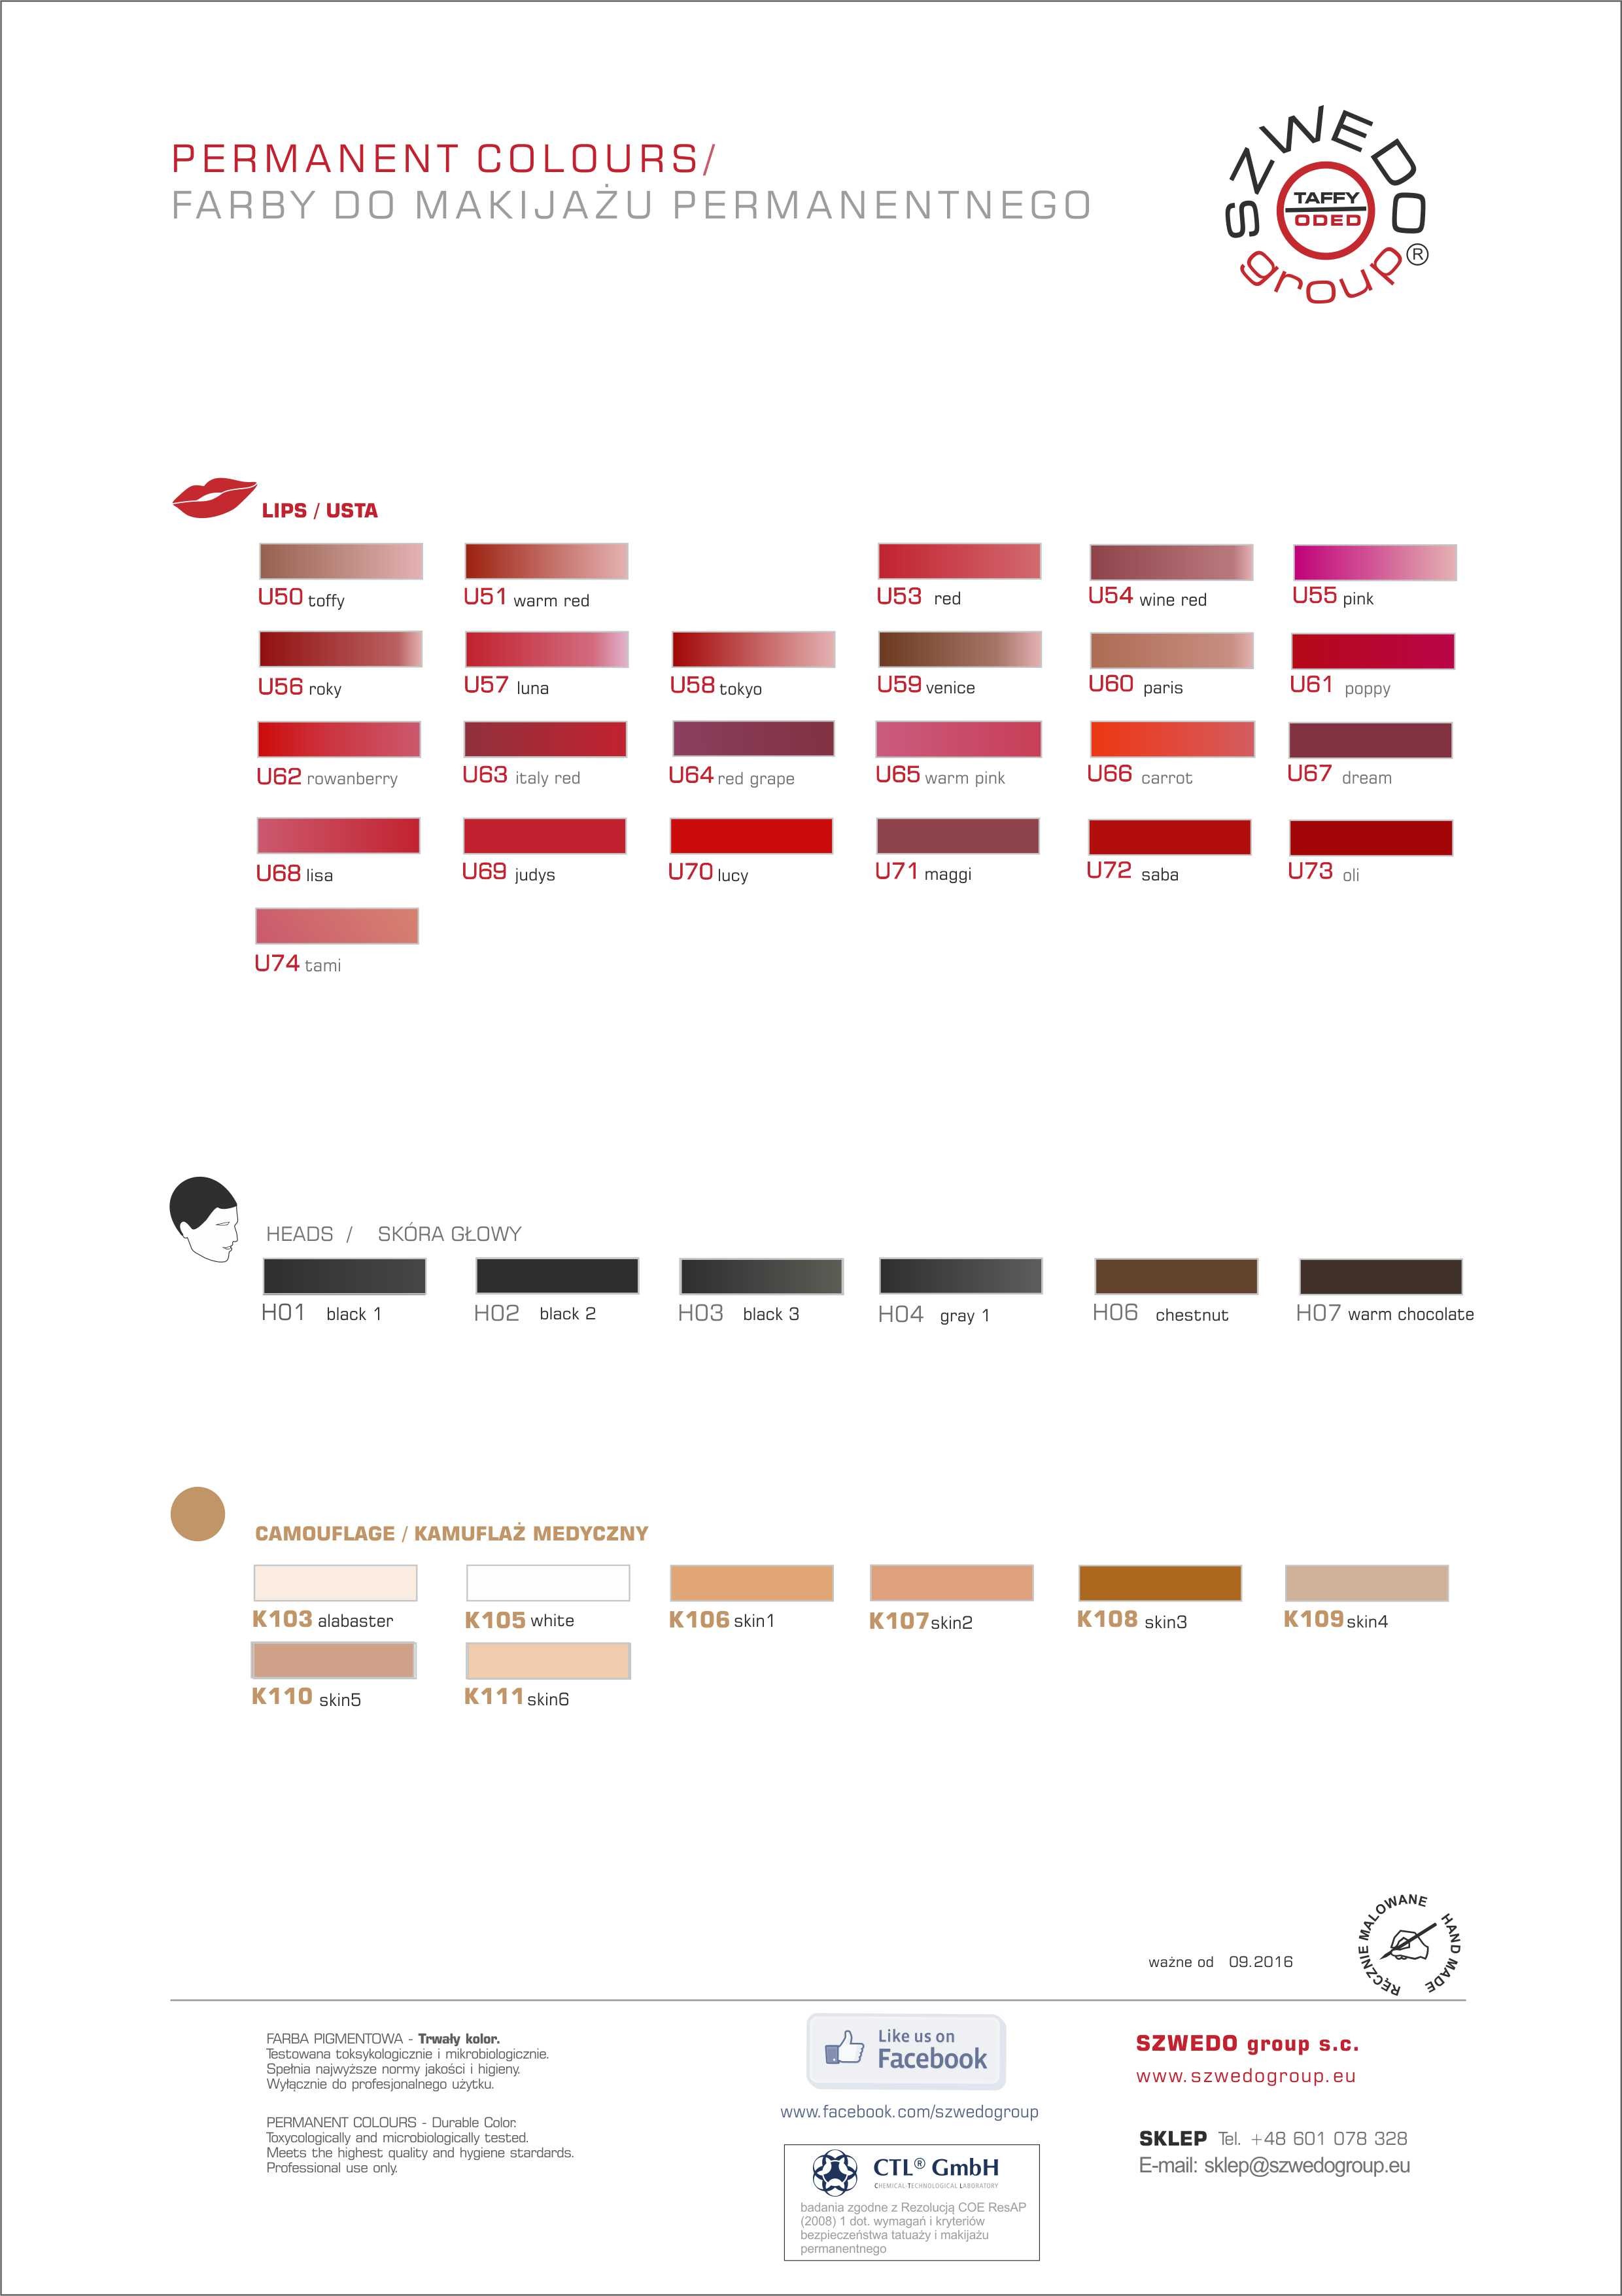 Karta kolorów farb/pigmentów do makijażu permanentnego